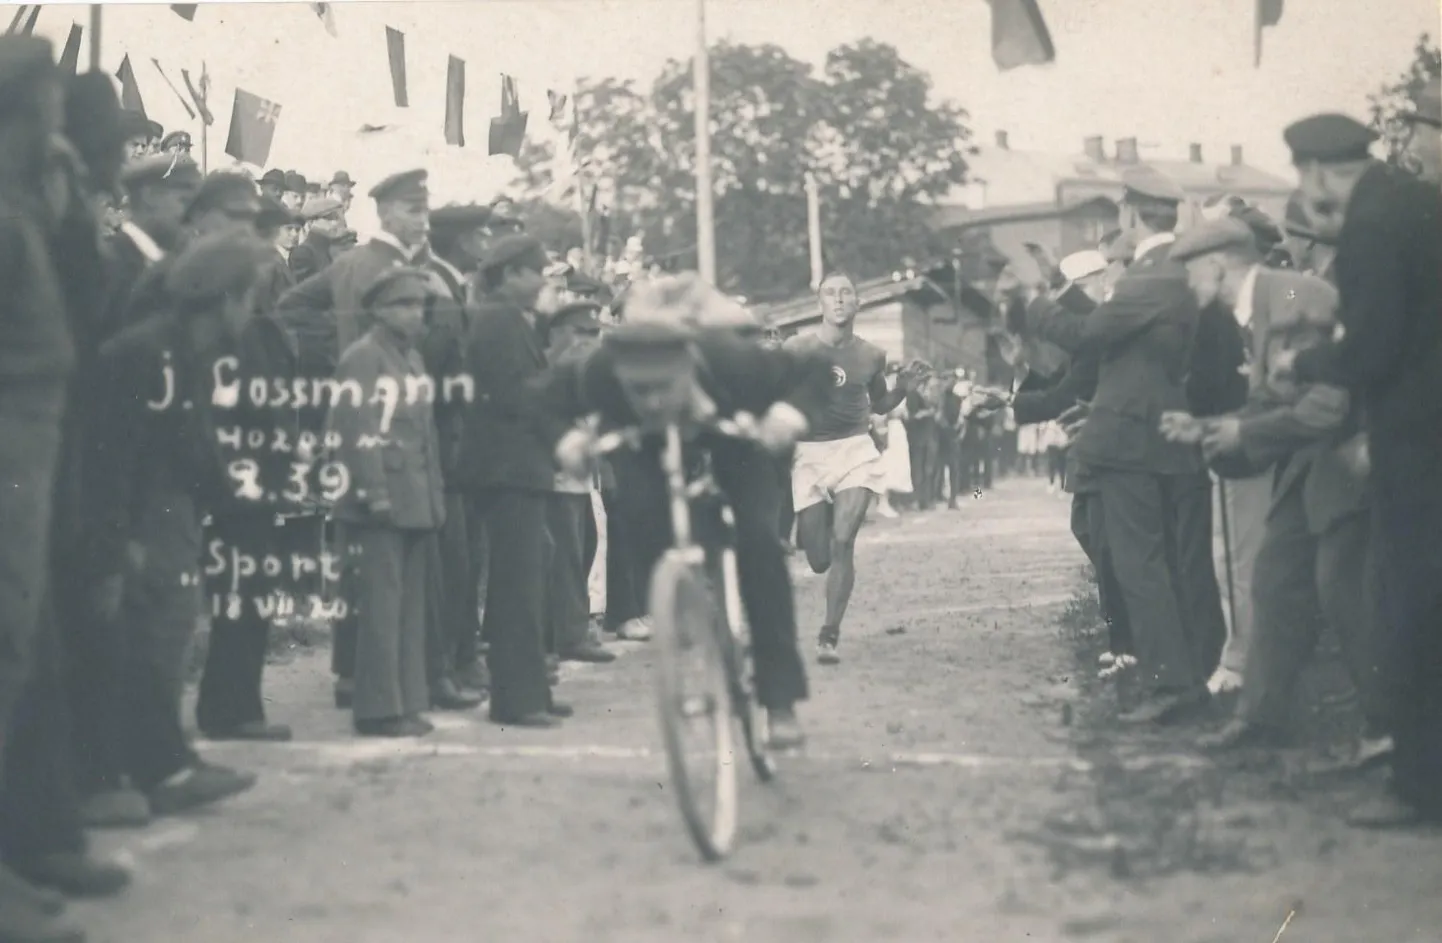 Kuu aega enne olümpiajooksu läbis Jüri Lossmann maratoni Tallinnas. Selle lõpetas ta ajaga 2:39.